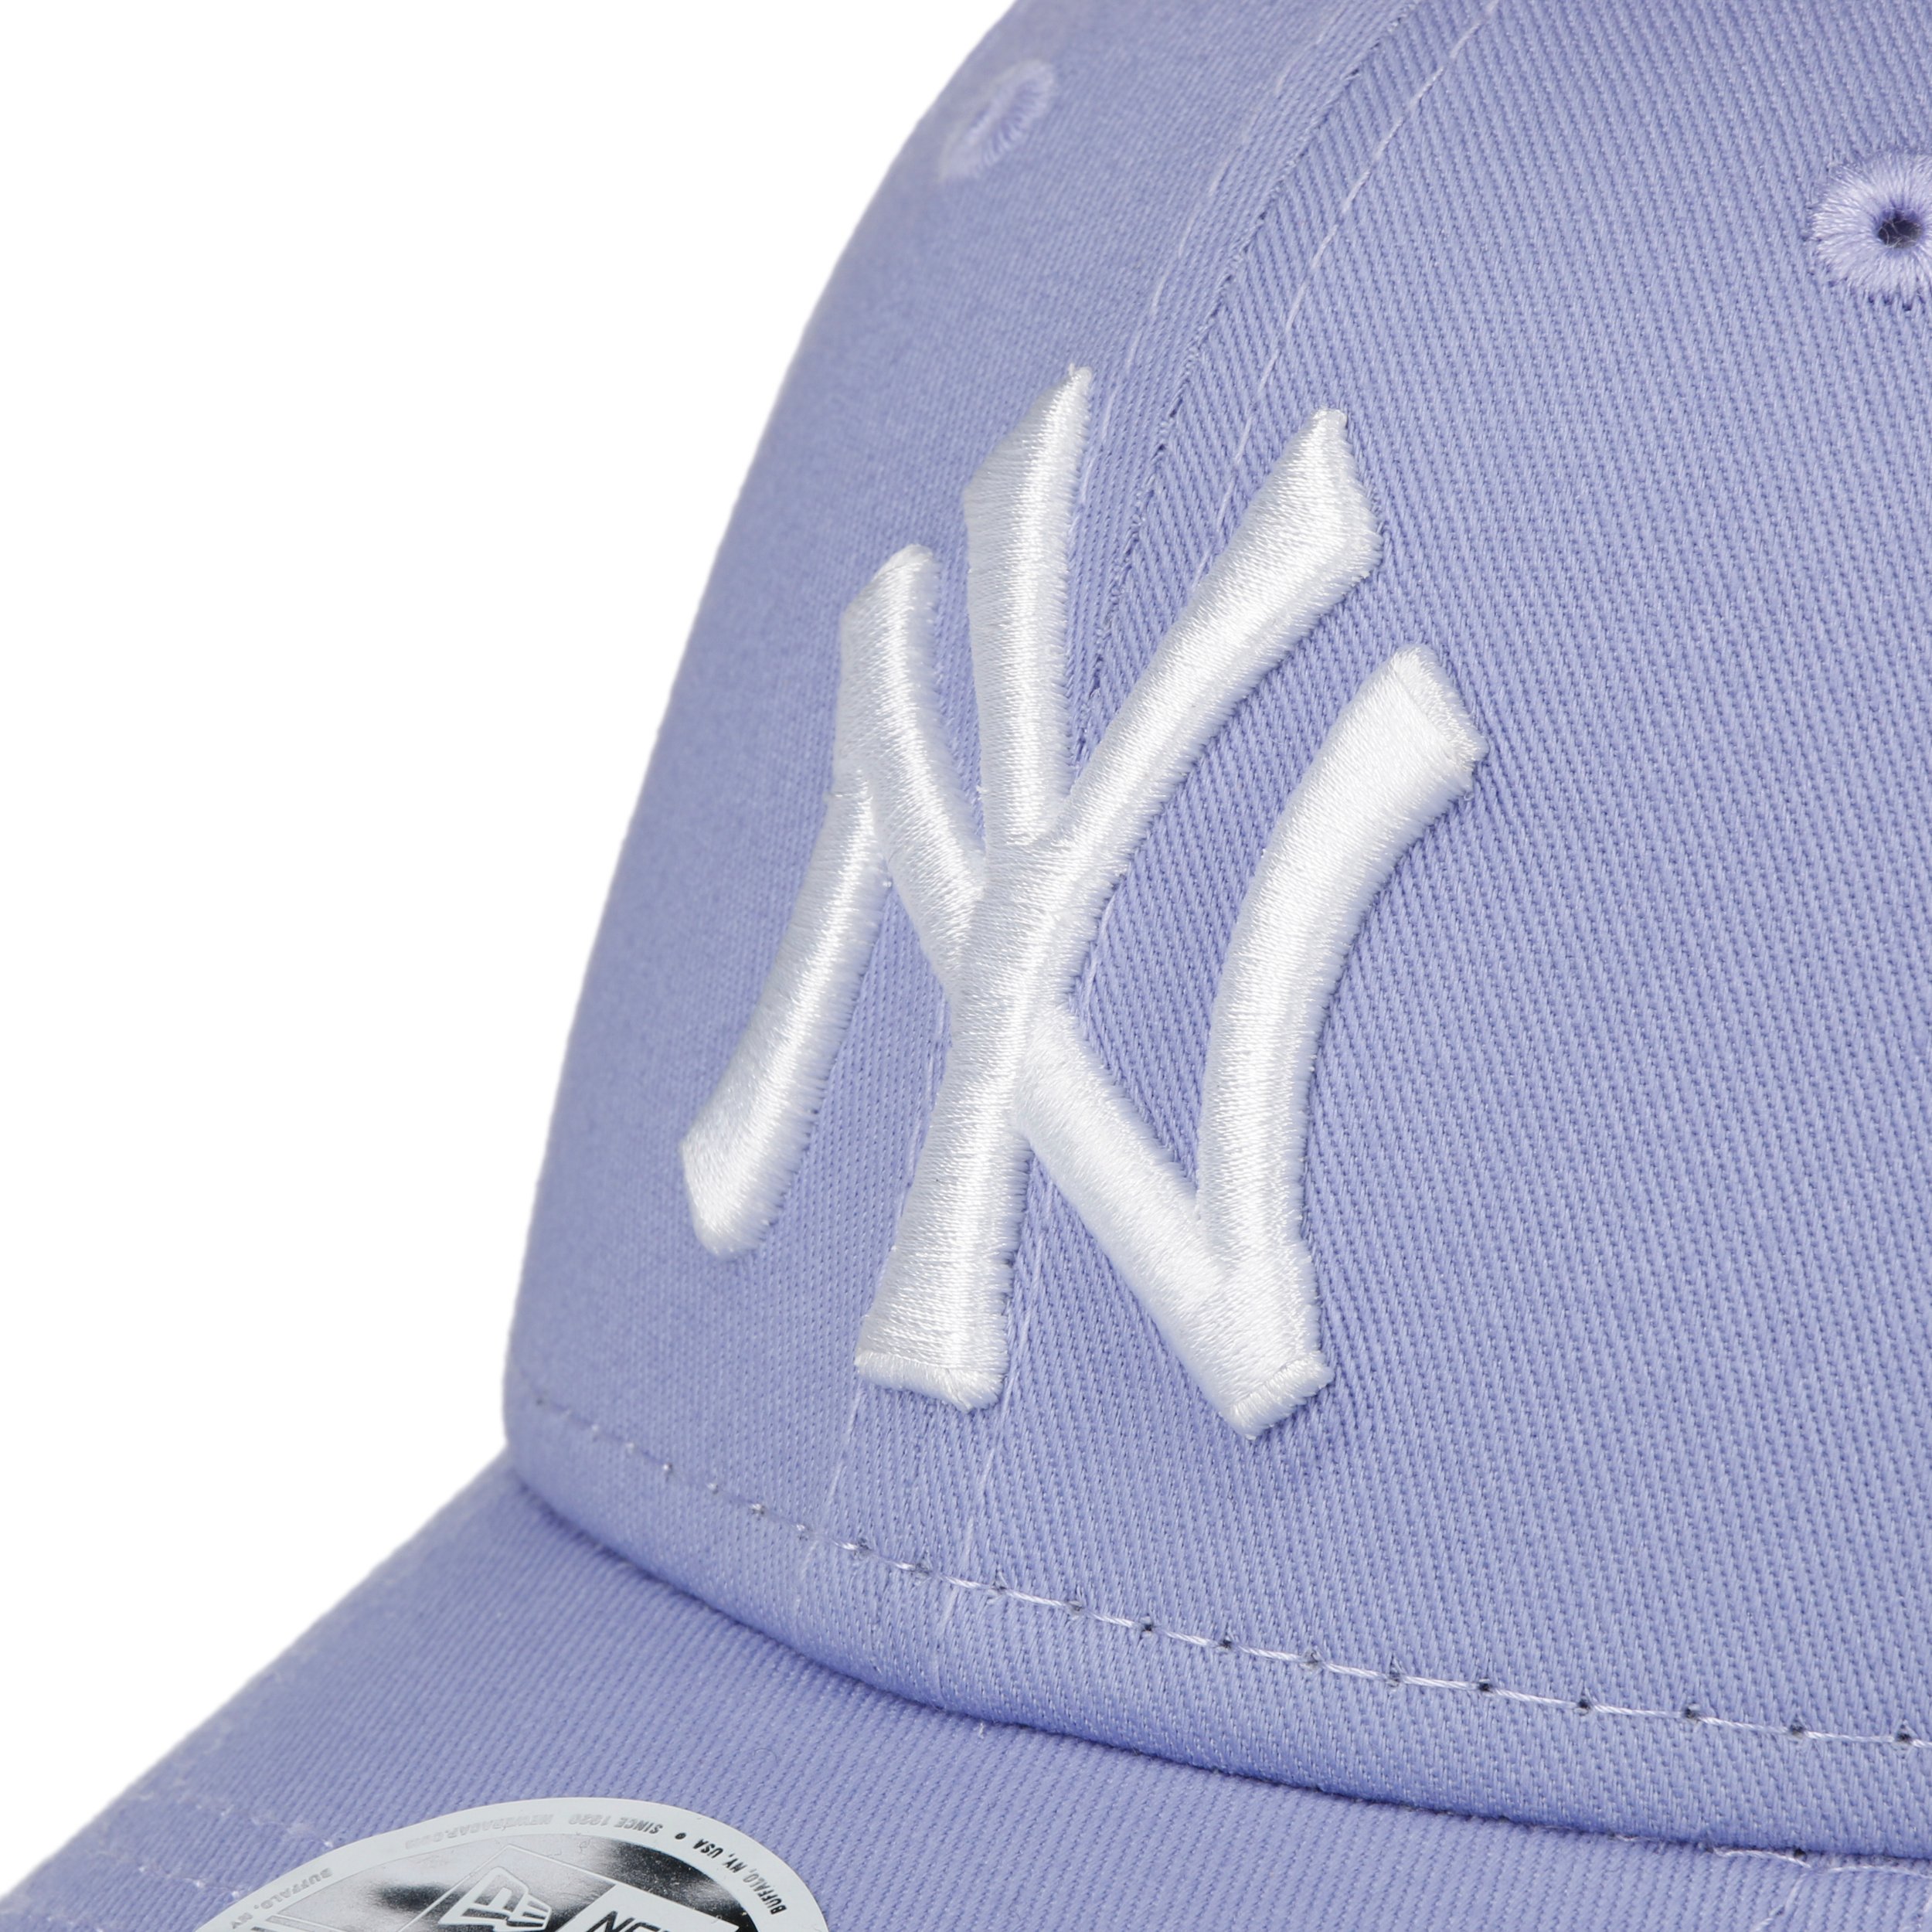 NY baseball cap black and purple - League Ess Cap 9Forty NY black